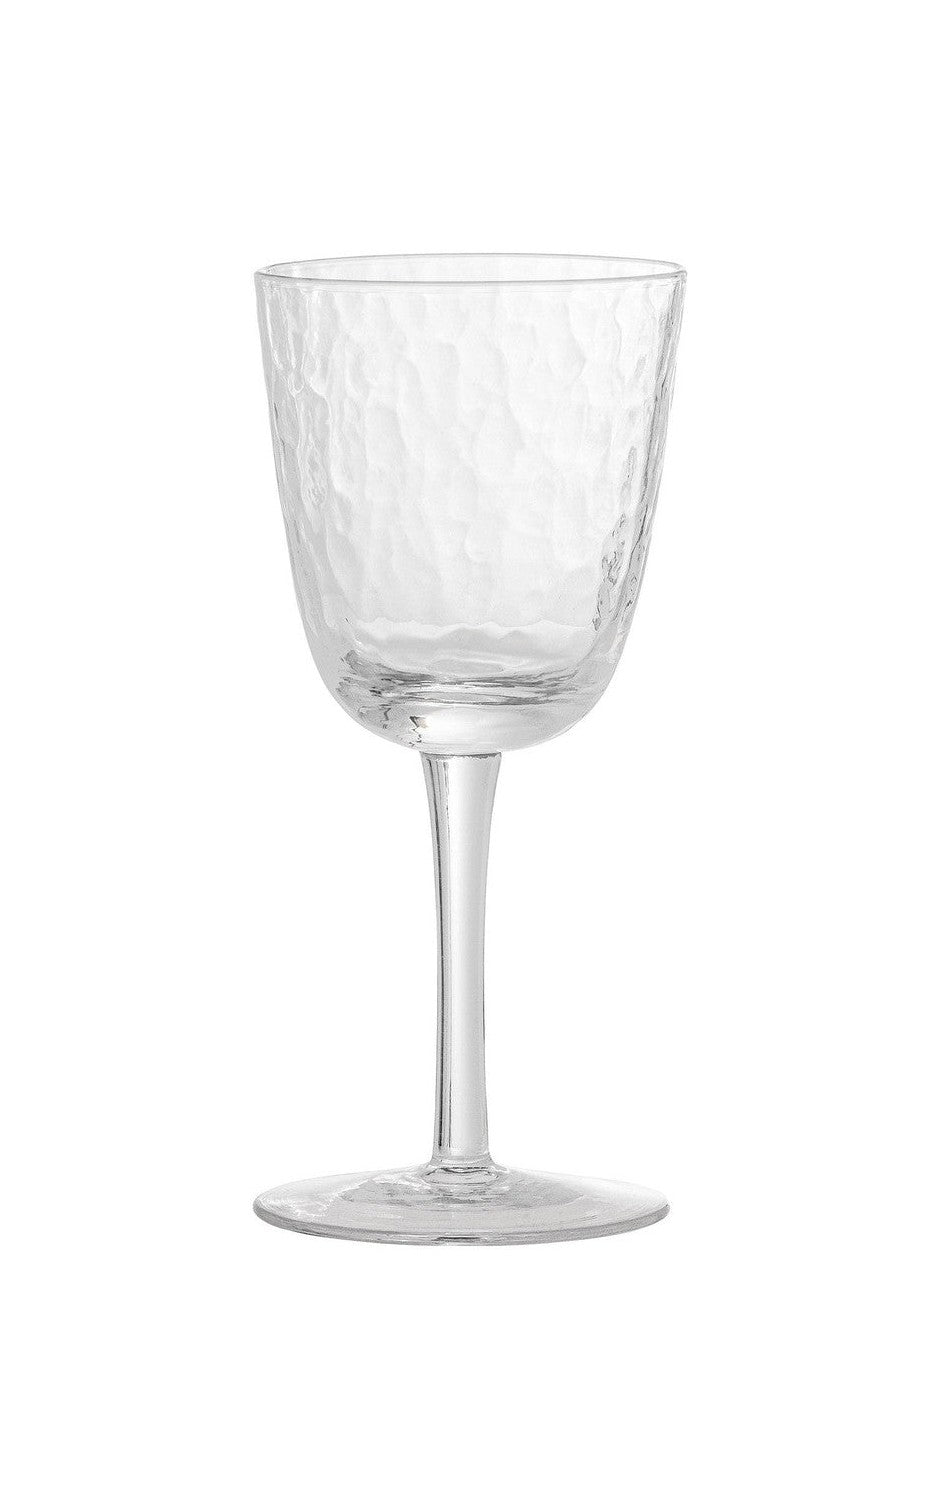 Bloomingville Asali Wine Glass, chiaro, bicchiere